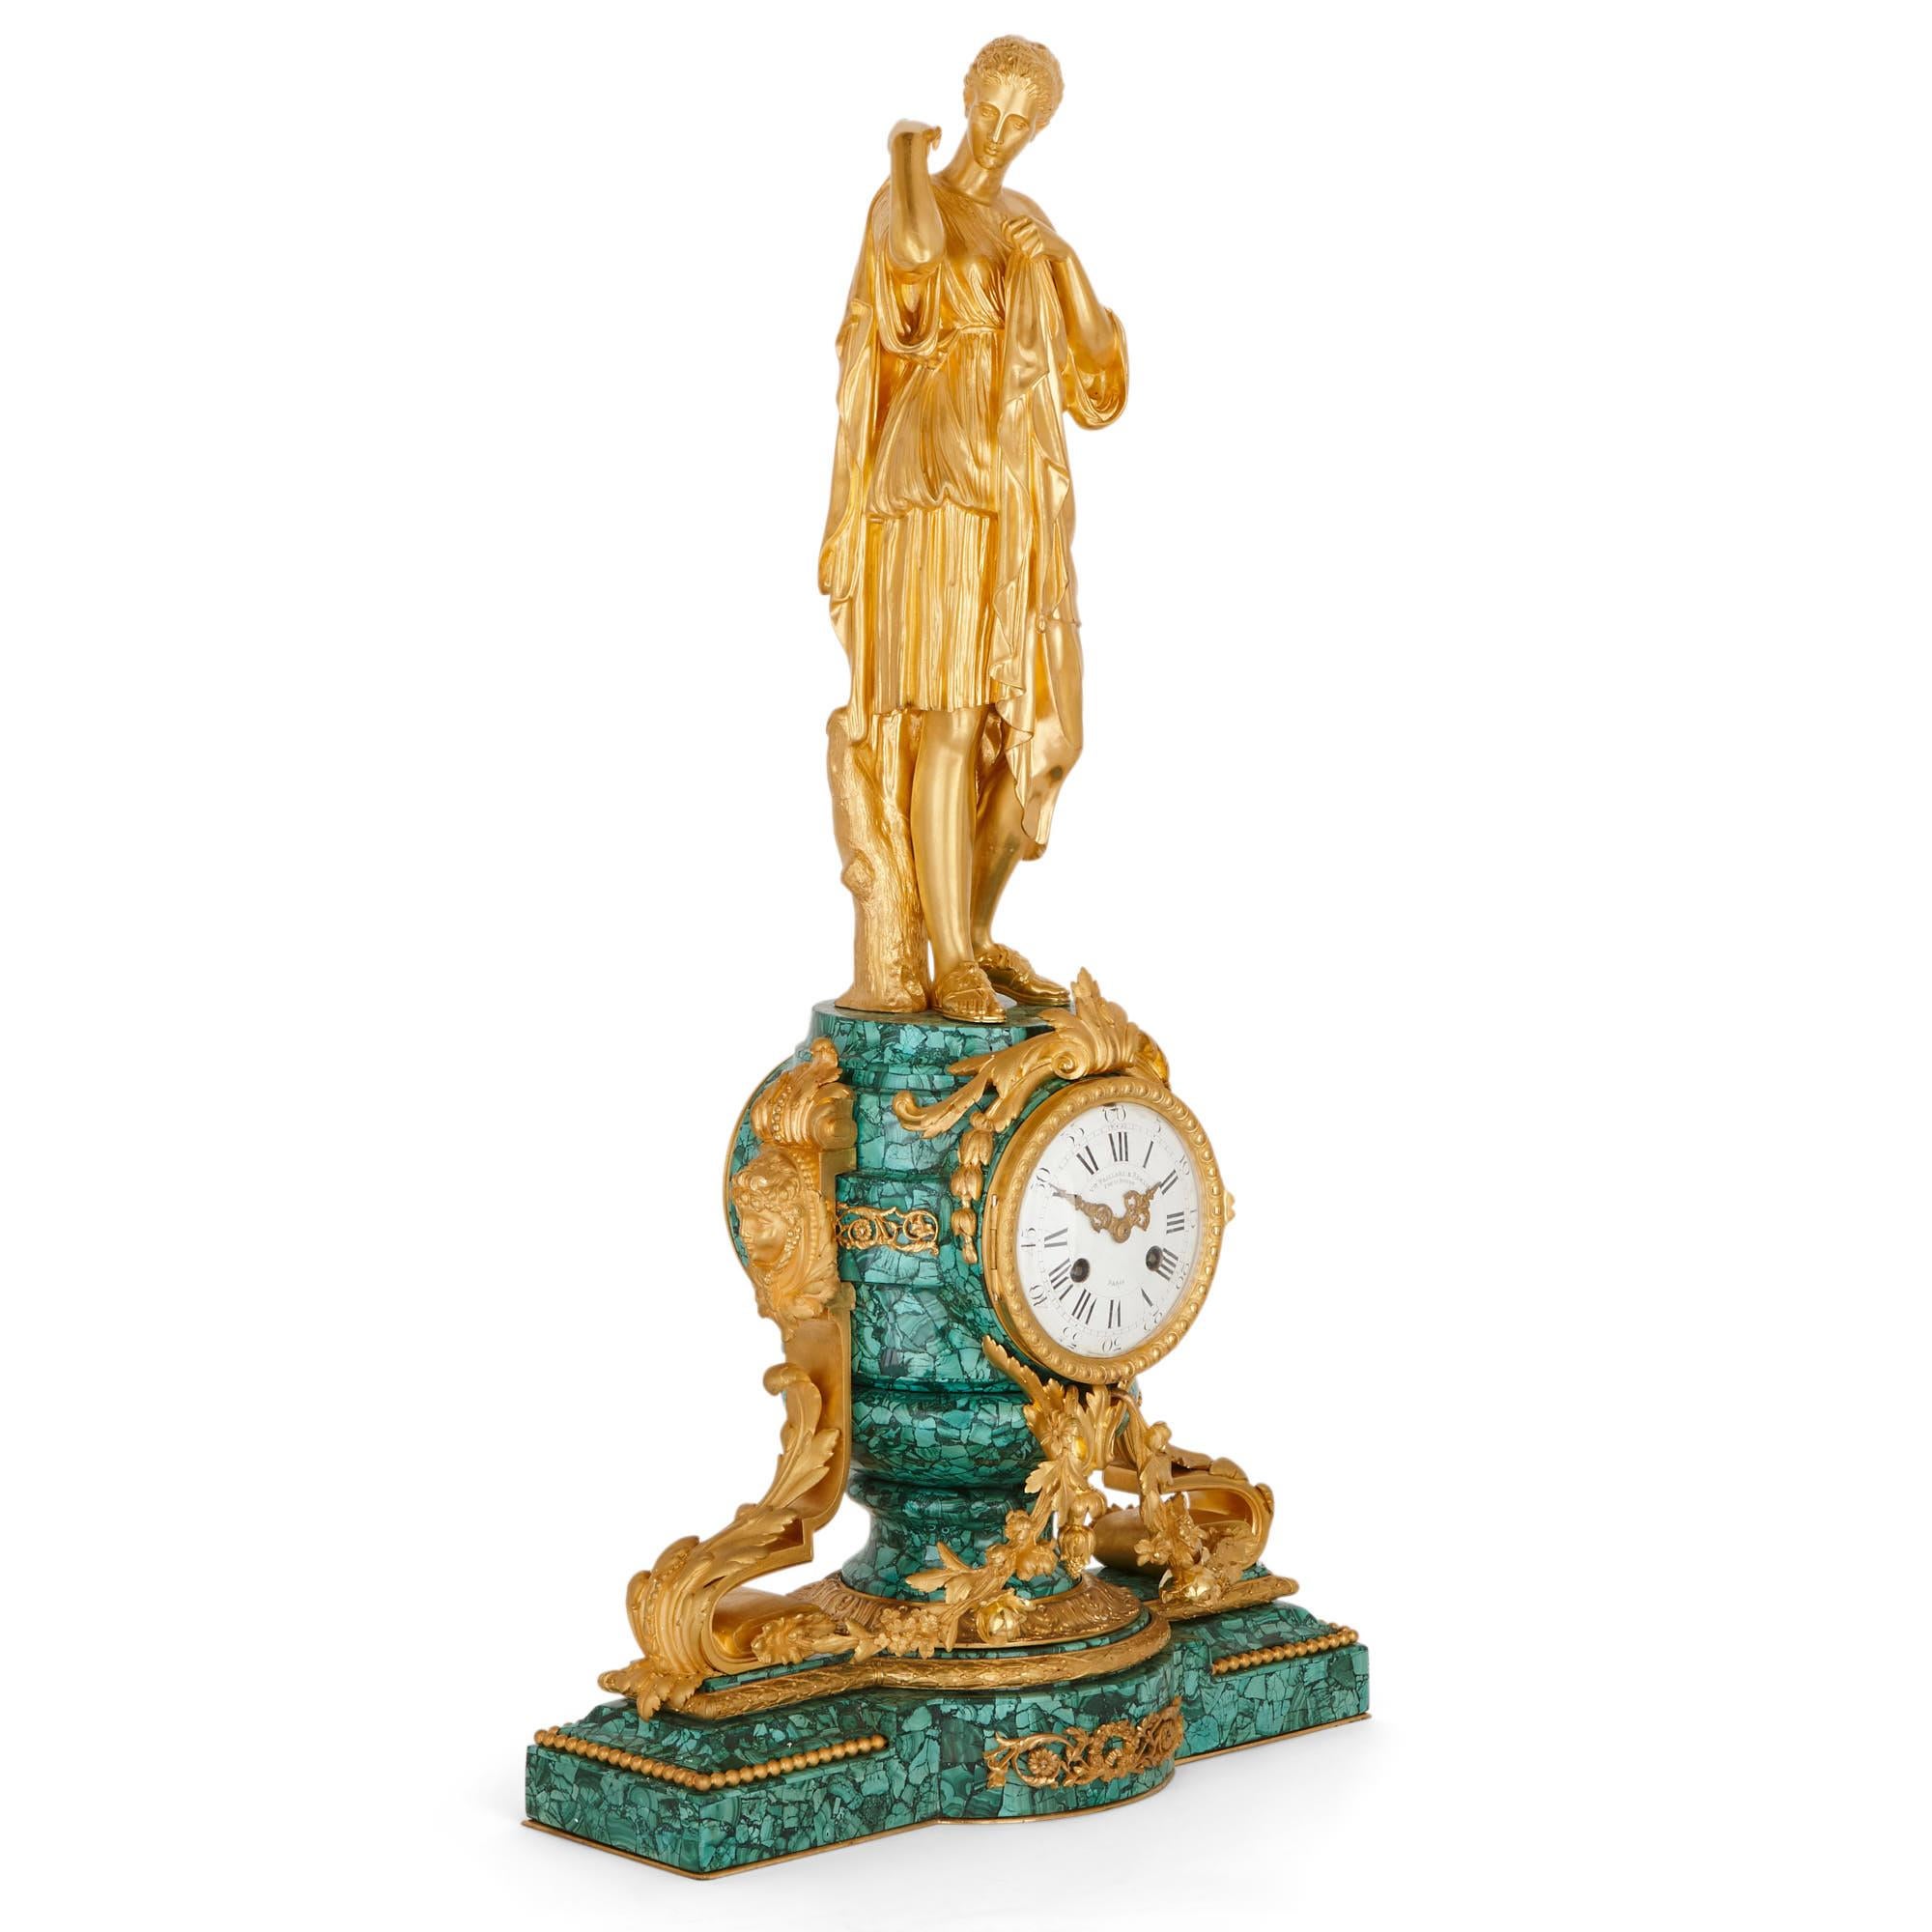 Dieses wunderbare Uhrenset wurde um 1870, Ende des 19. Jahrhunderts, in Frankreich hergestellt. Das Set, das aus einer Kaminuhr und zwei Kandelabern besteht, ist aus vergoldeter Bronze (Ormolu) und dem grünen Edelstein Malachit gefertigt.

Die